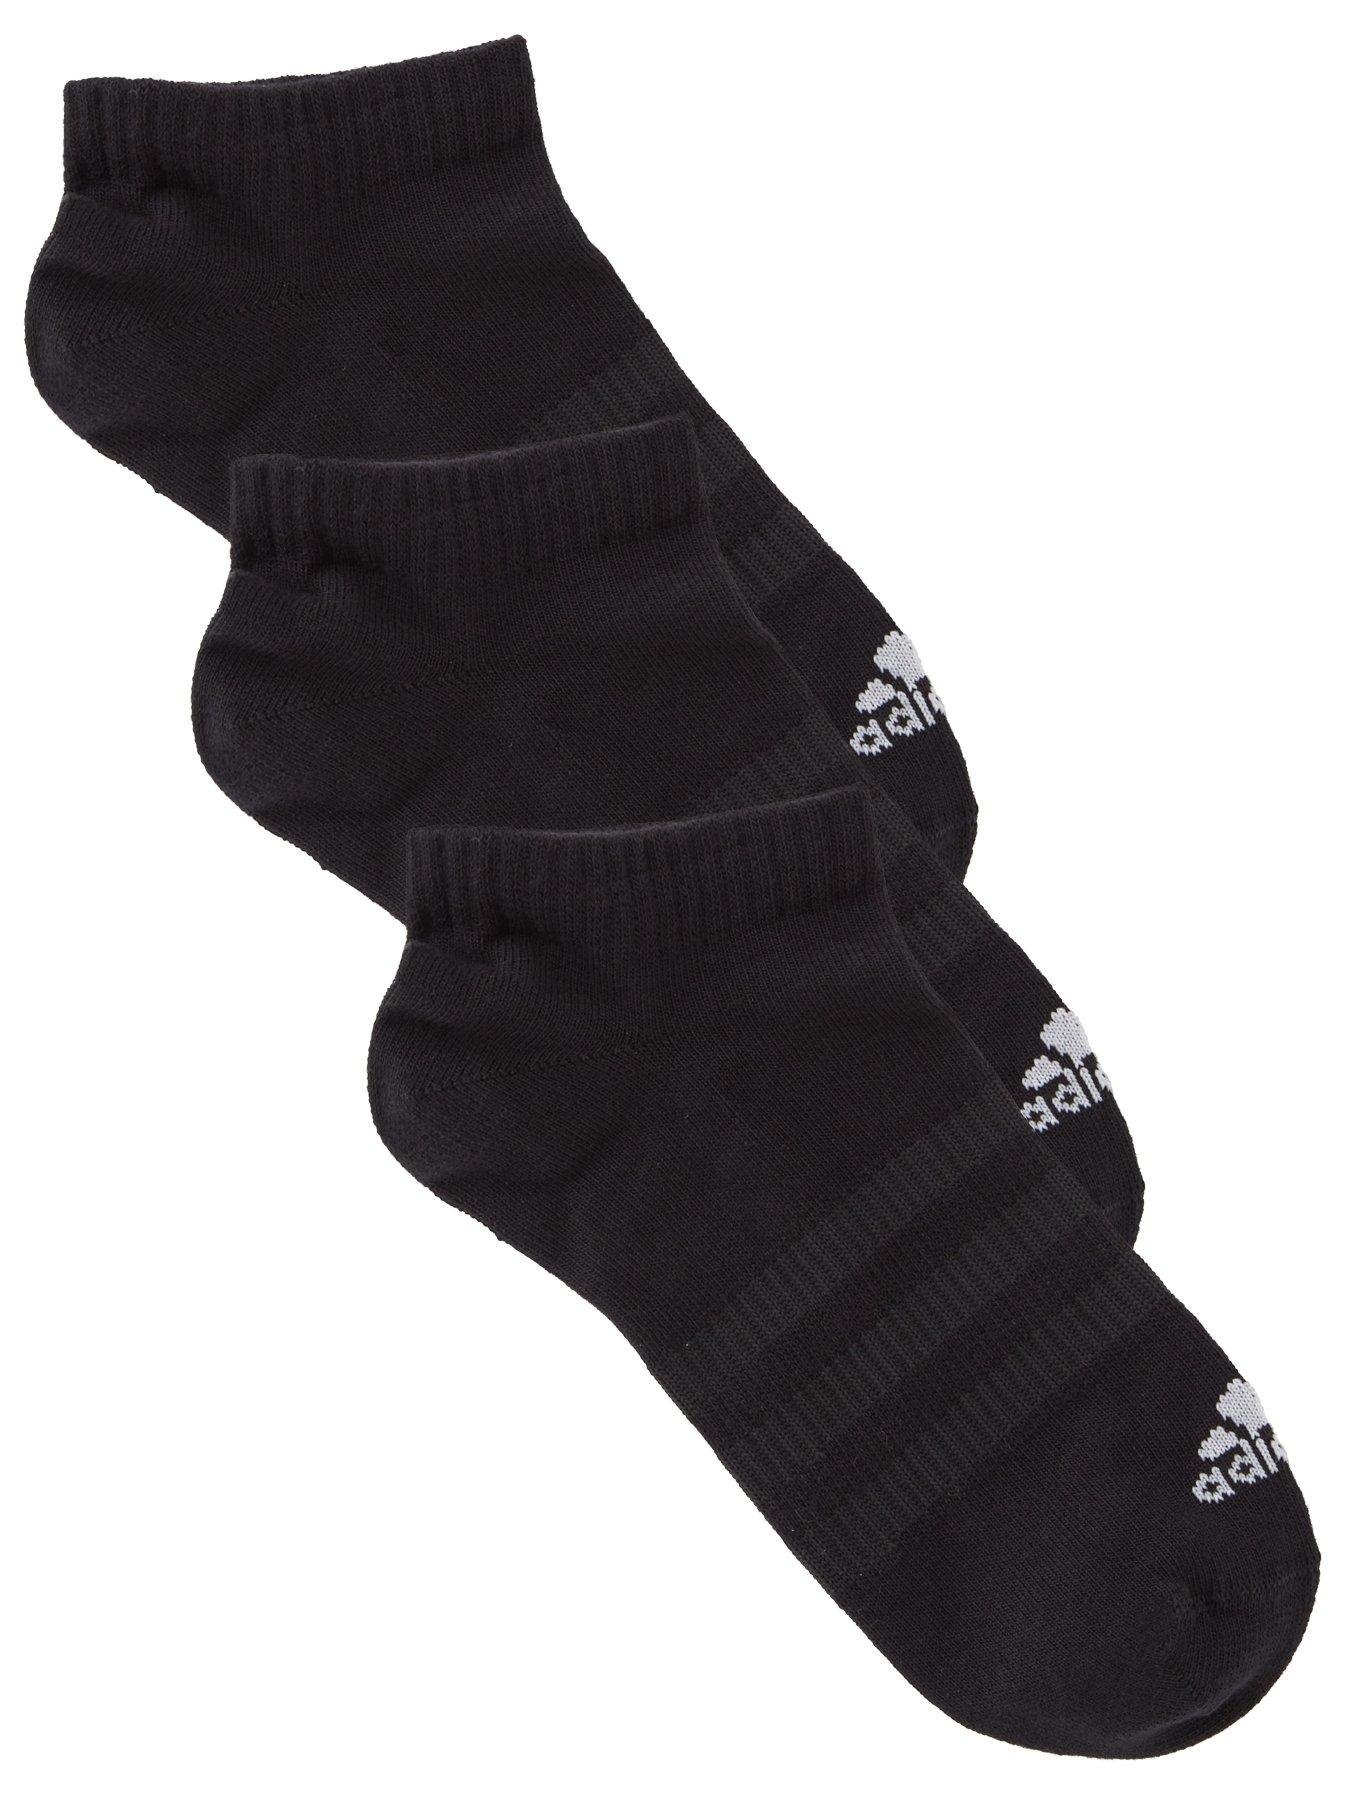 adidas Tennis Low Socks White/Black